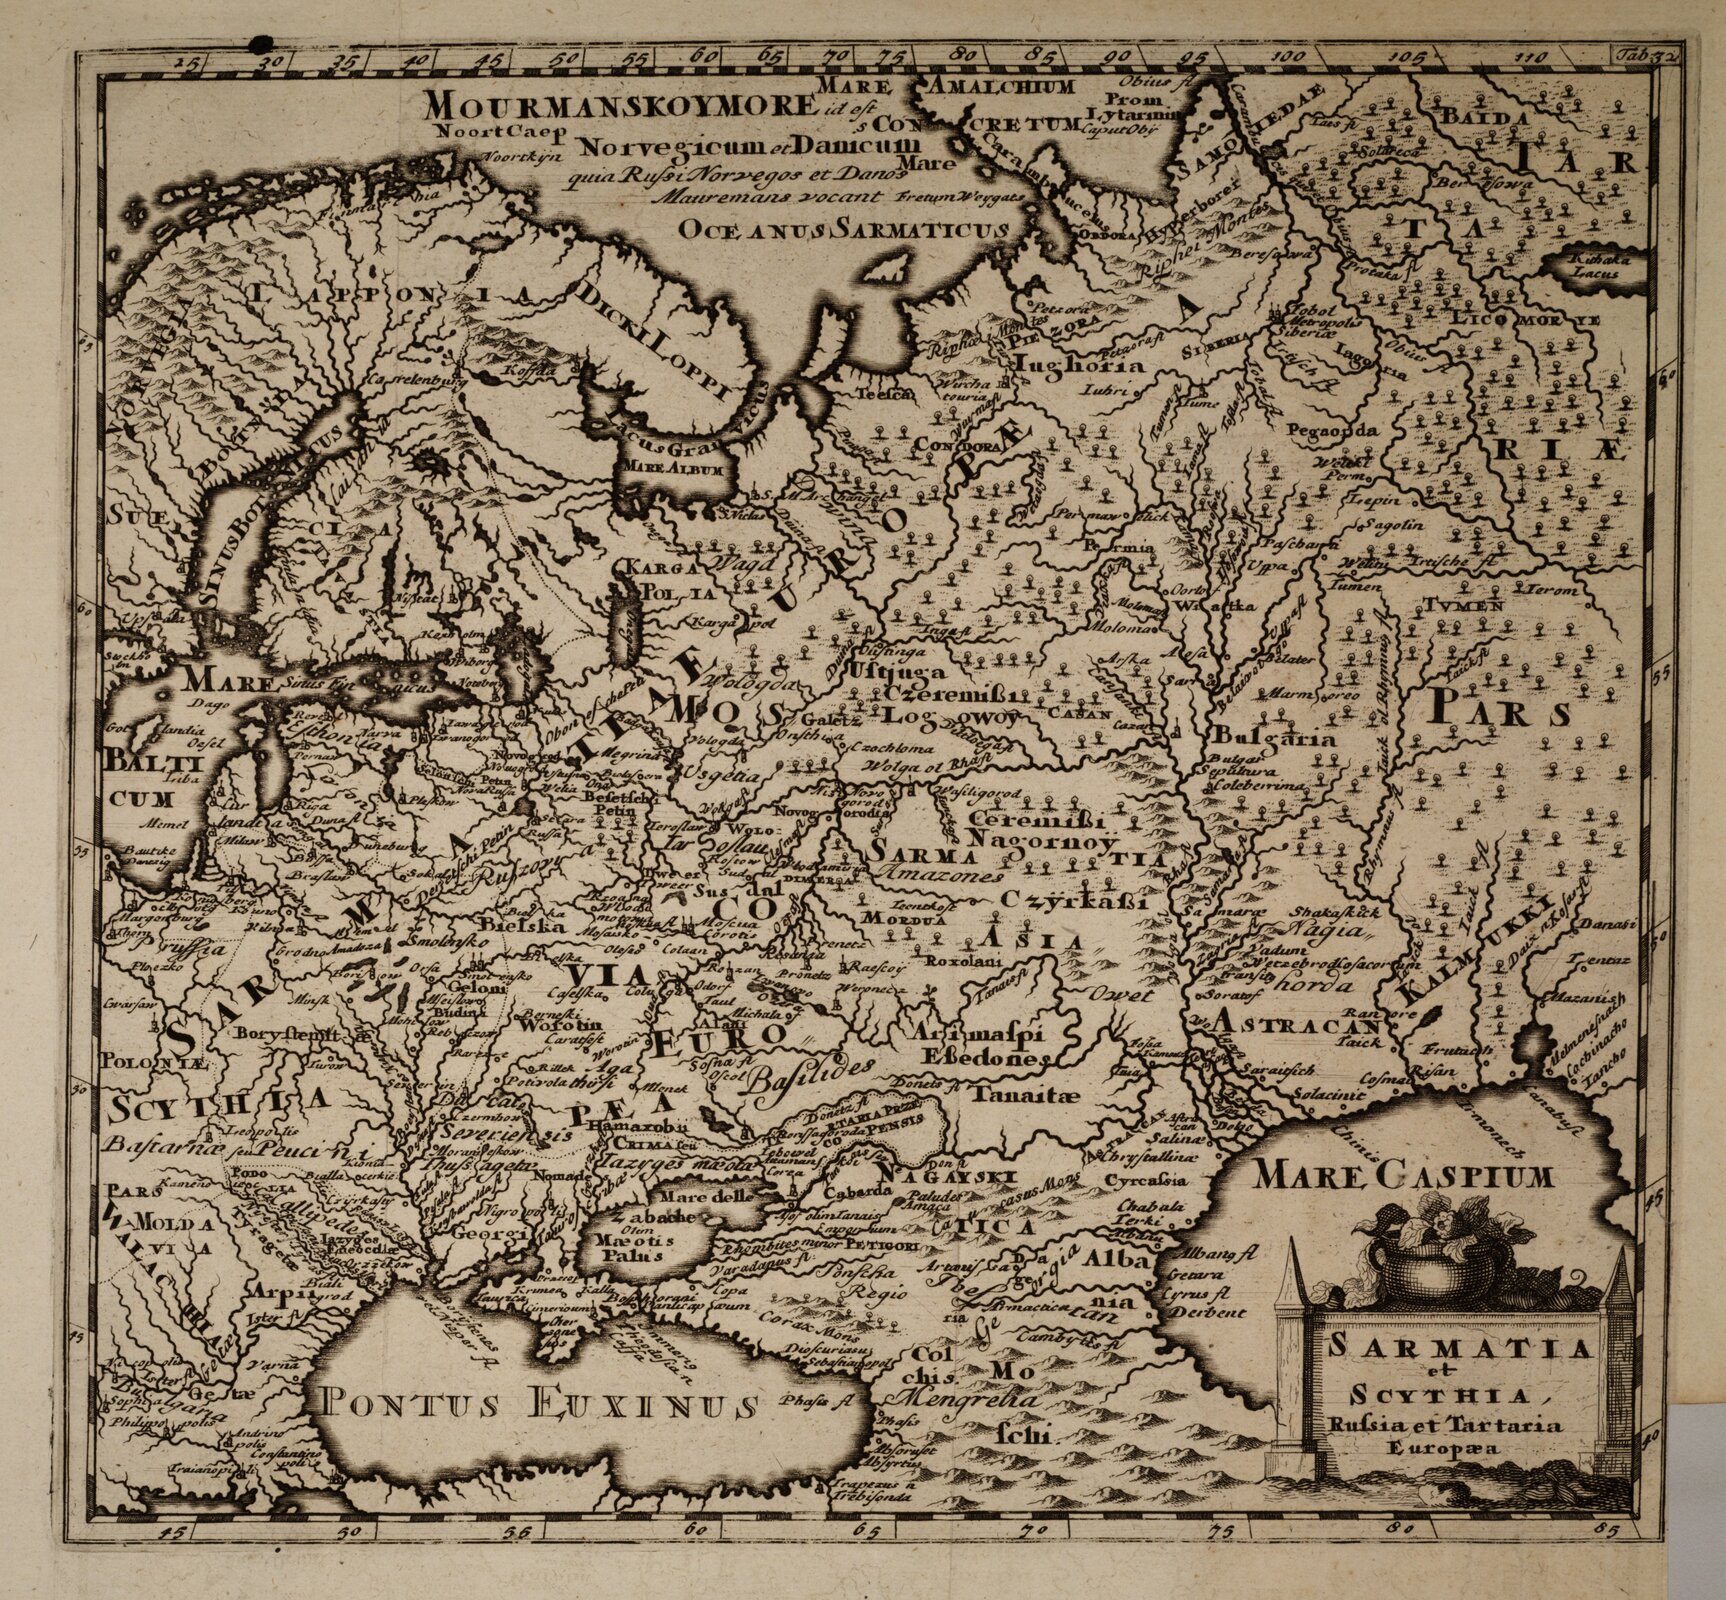 XVII-wieczna mapa środkowo-wschodniej Europy przedstawia m.in. Sarmację, Scytię i Ruś. XVII-wieczna mapa środkowo-wschodniej Europy przedstawia m.in. Sarmację, Scytię i Ruś. Źródło: domena publiczna.